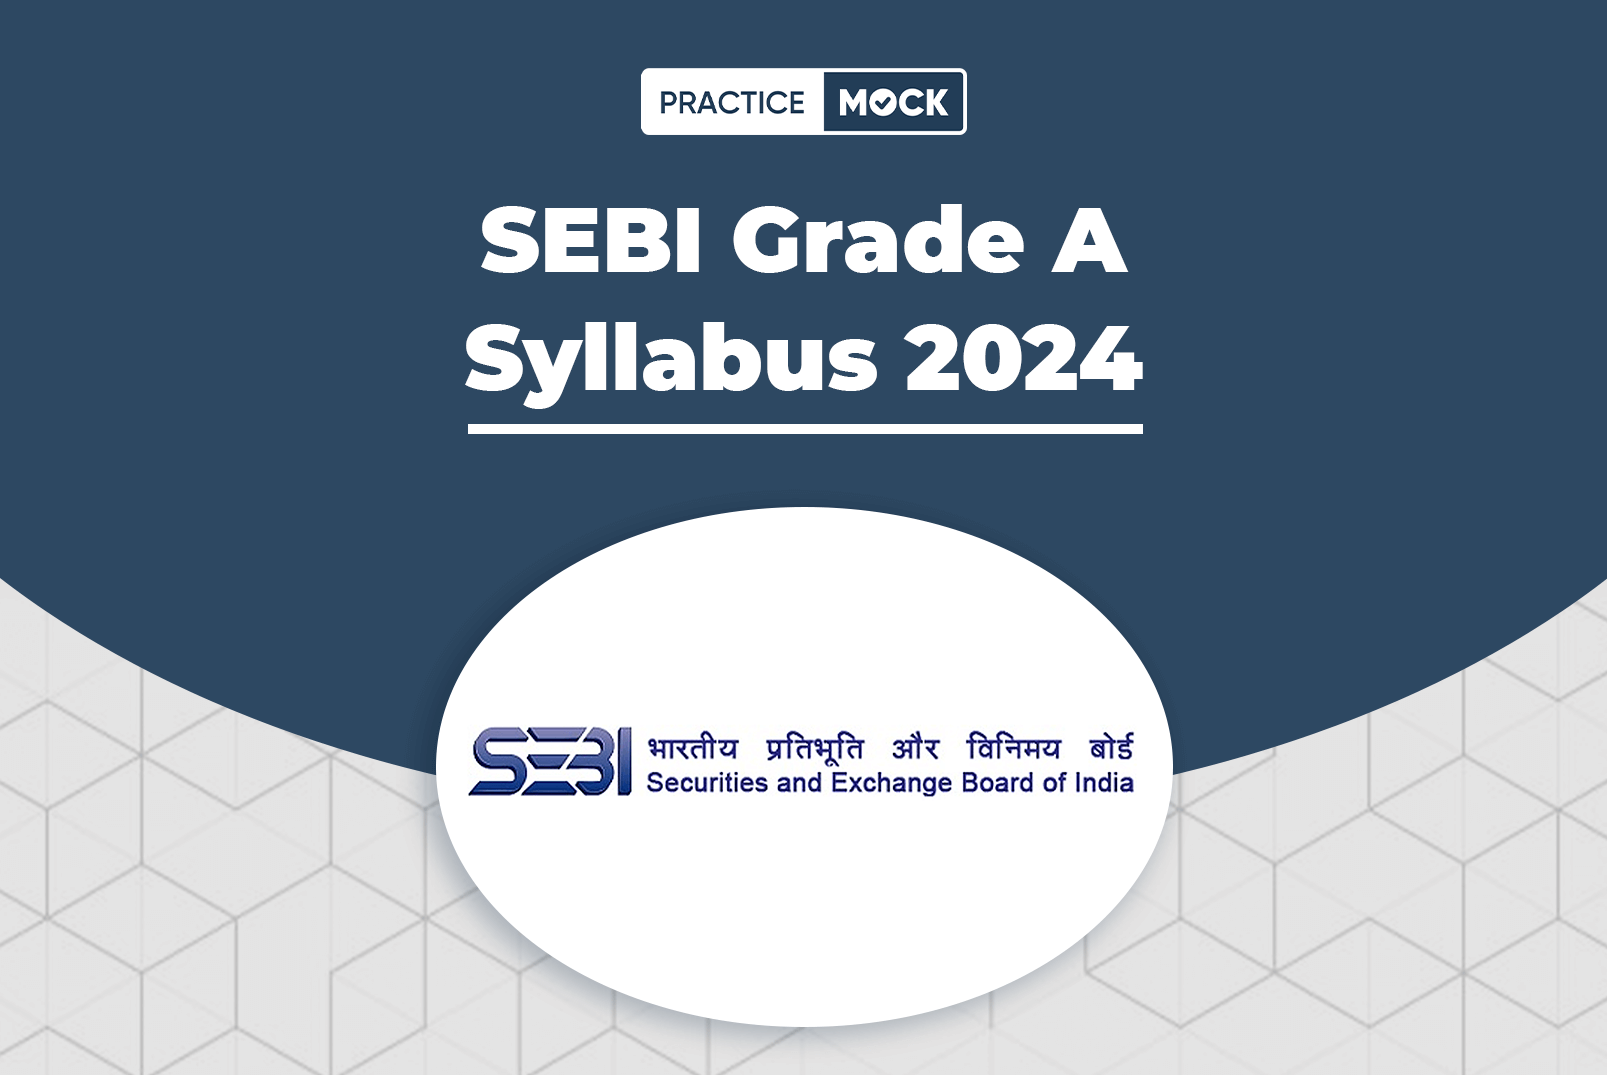 SEBI Grade A Syllabus 2024, Phase 1 & 2 Syllabus Topics